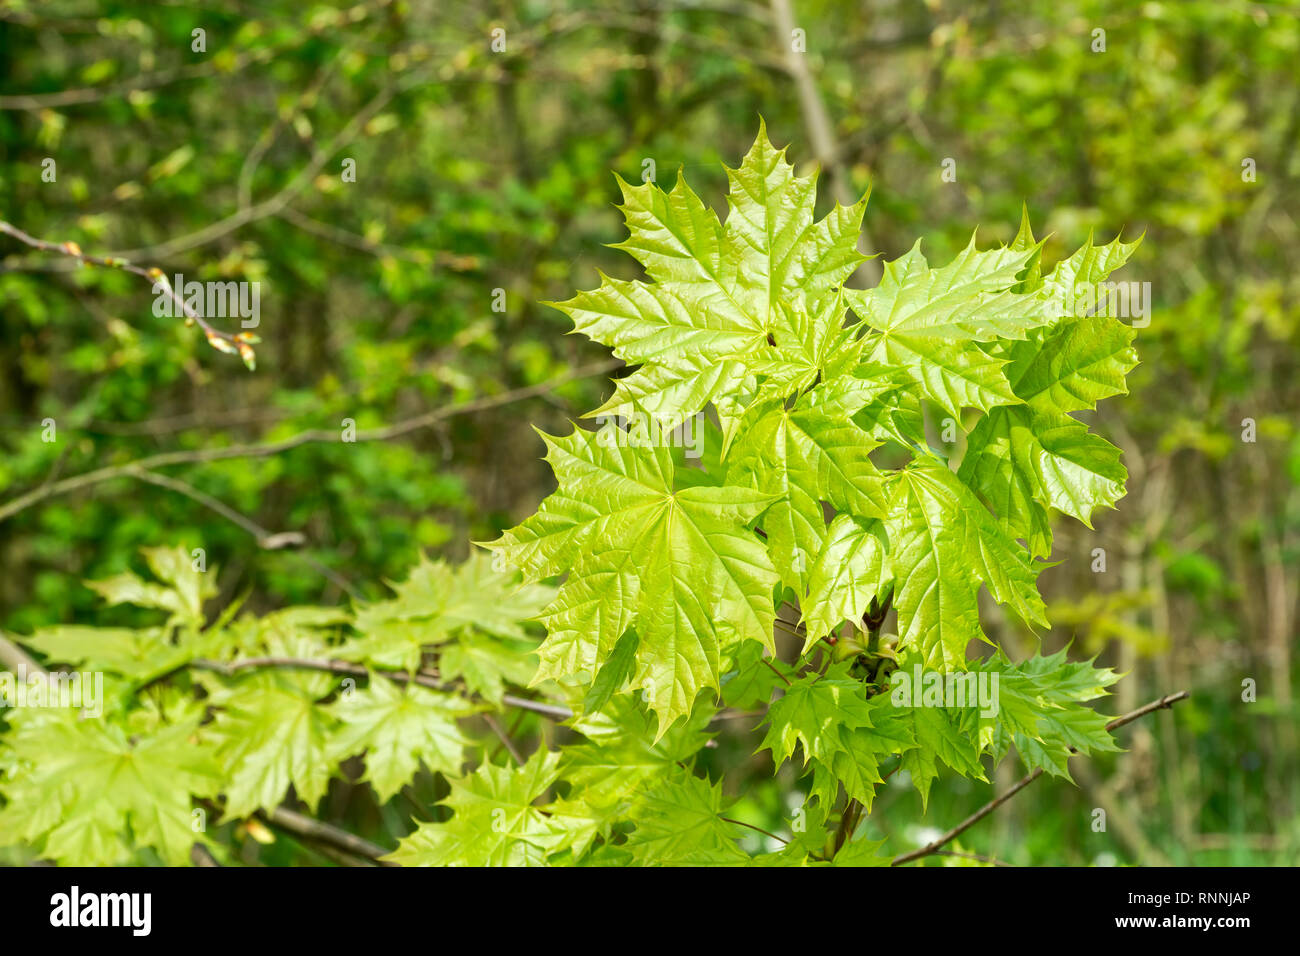 Die jungen frischen Blätter Ahorn (Acer negundo) im Frühjahr Wald. Die Blätter sind von der Sonne hervorgehoben. Natürlichen grünen Hintergrund. Selektive konzentrieren. Stockfoto